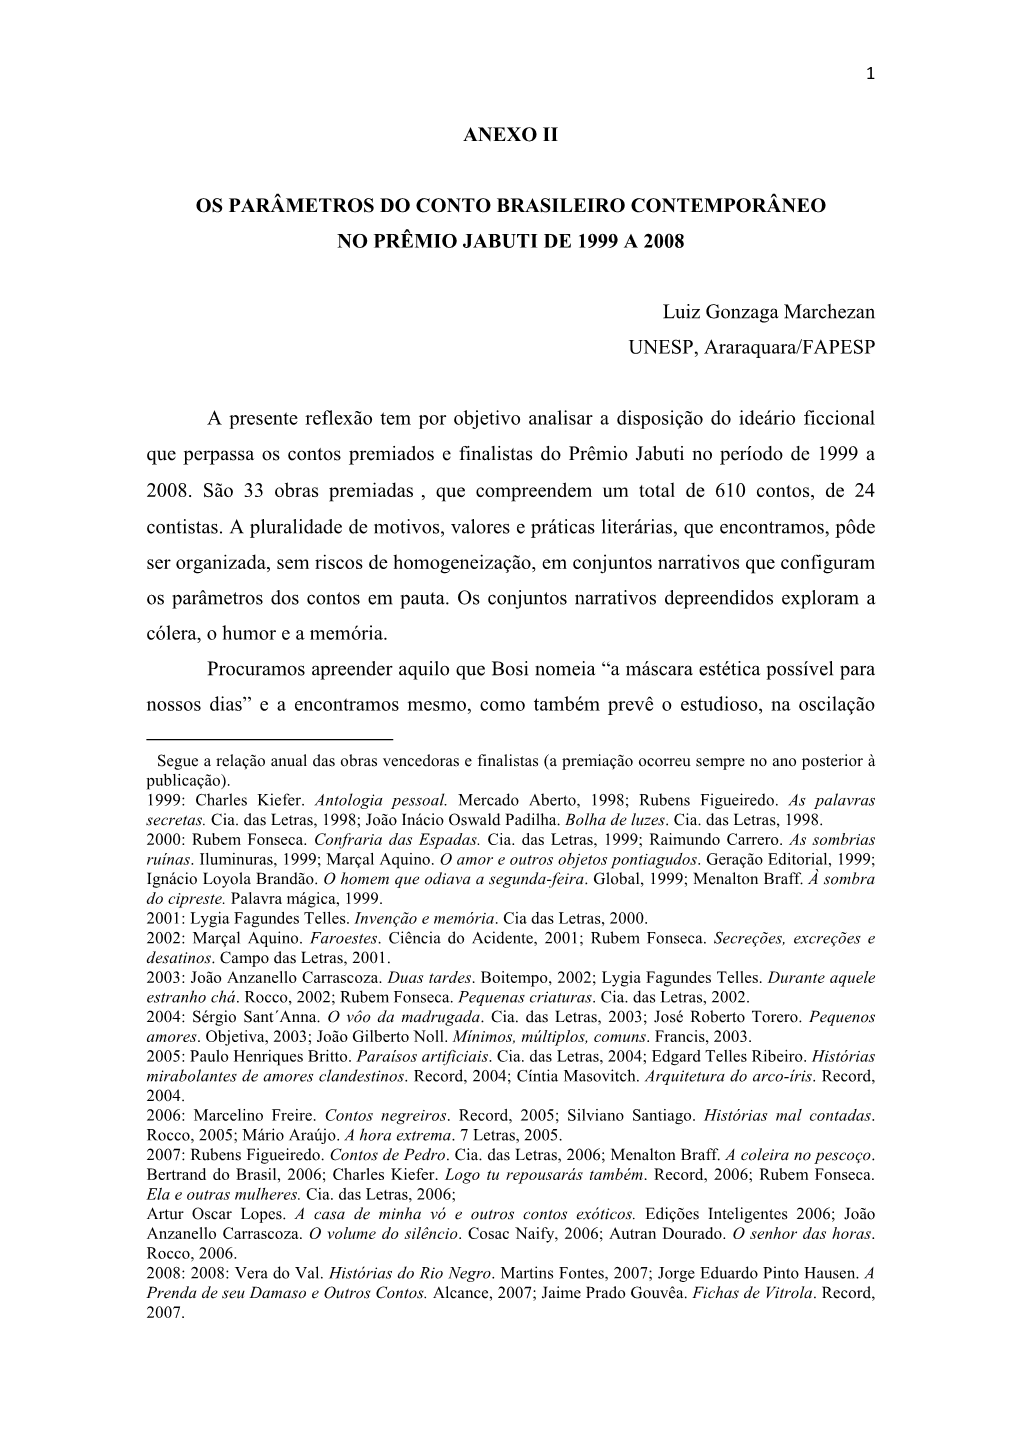 Os Parâmetros Do Conto Brasileiro Contemporâneo No Prêmio Jabuti De 1999 a 2008